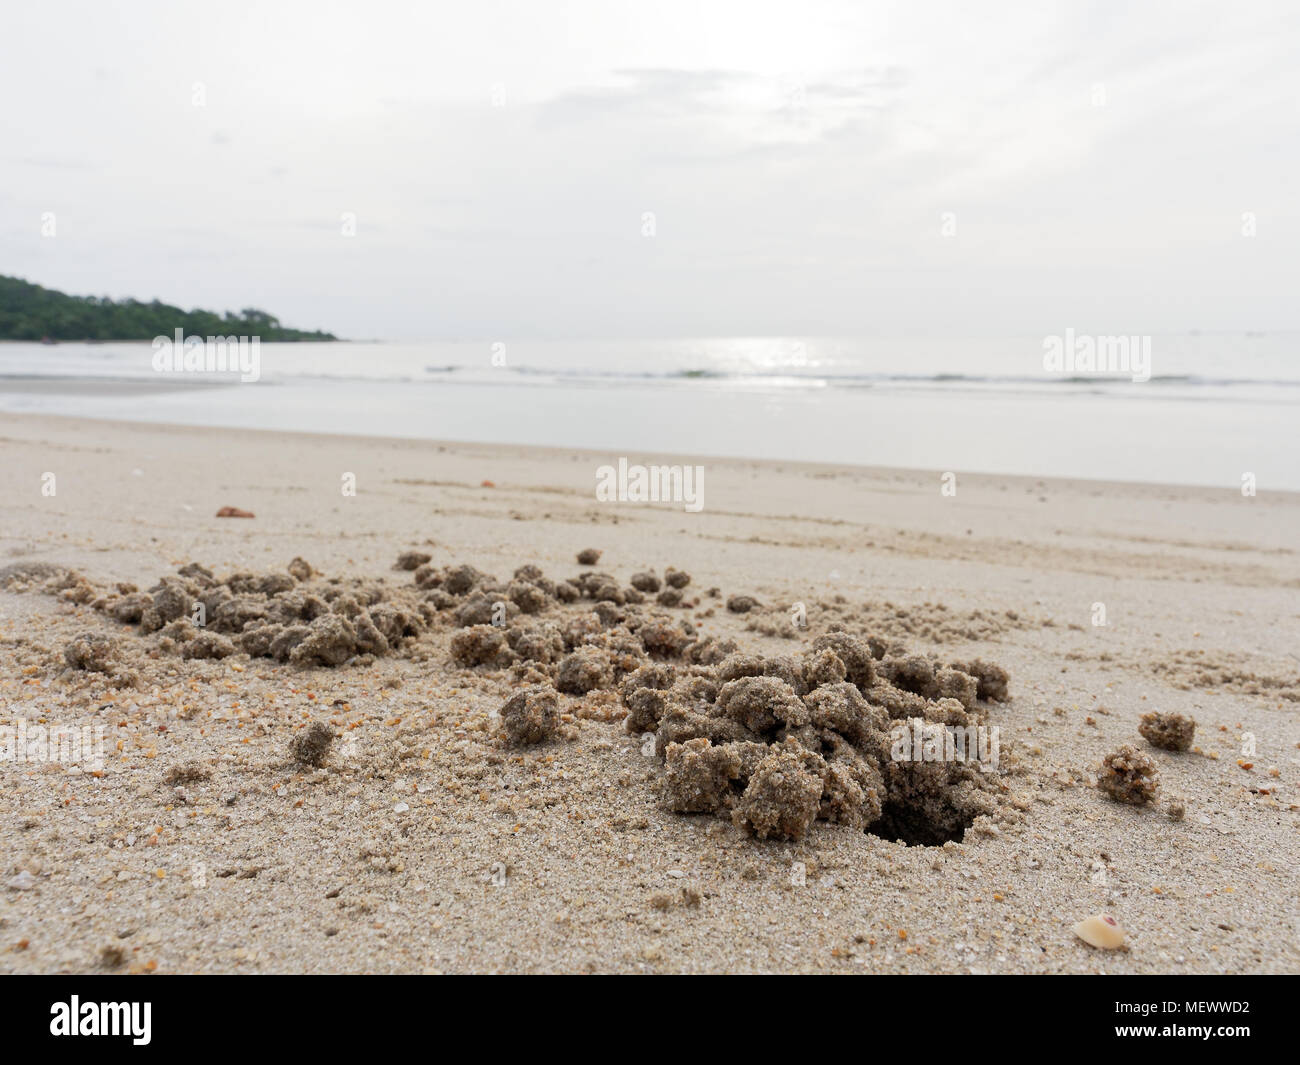 Fuchsbau oder Loch mit Sediment Kugeln oder Pellets durch Sand von Ghost oder sand Krabbe mit Strand, Meer und Himmel Hintergrund Stockfoto